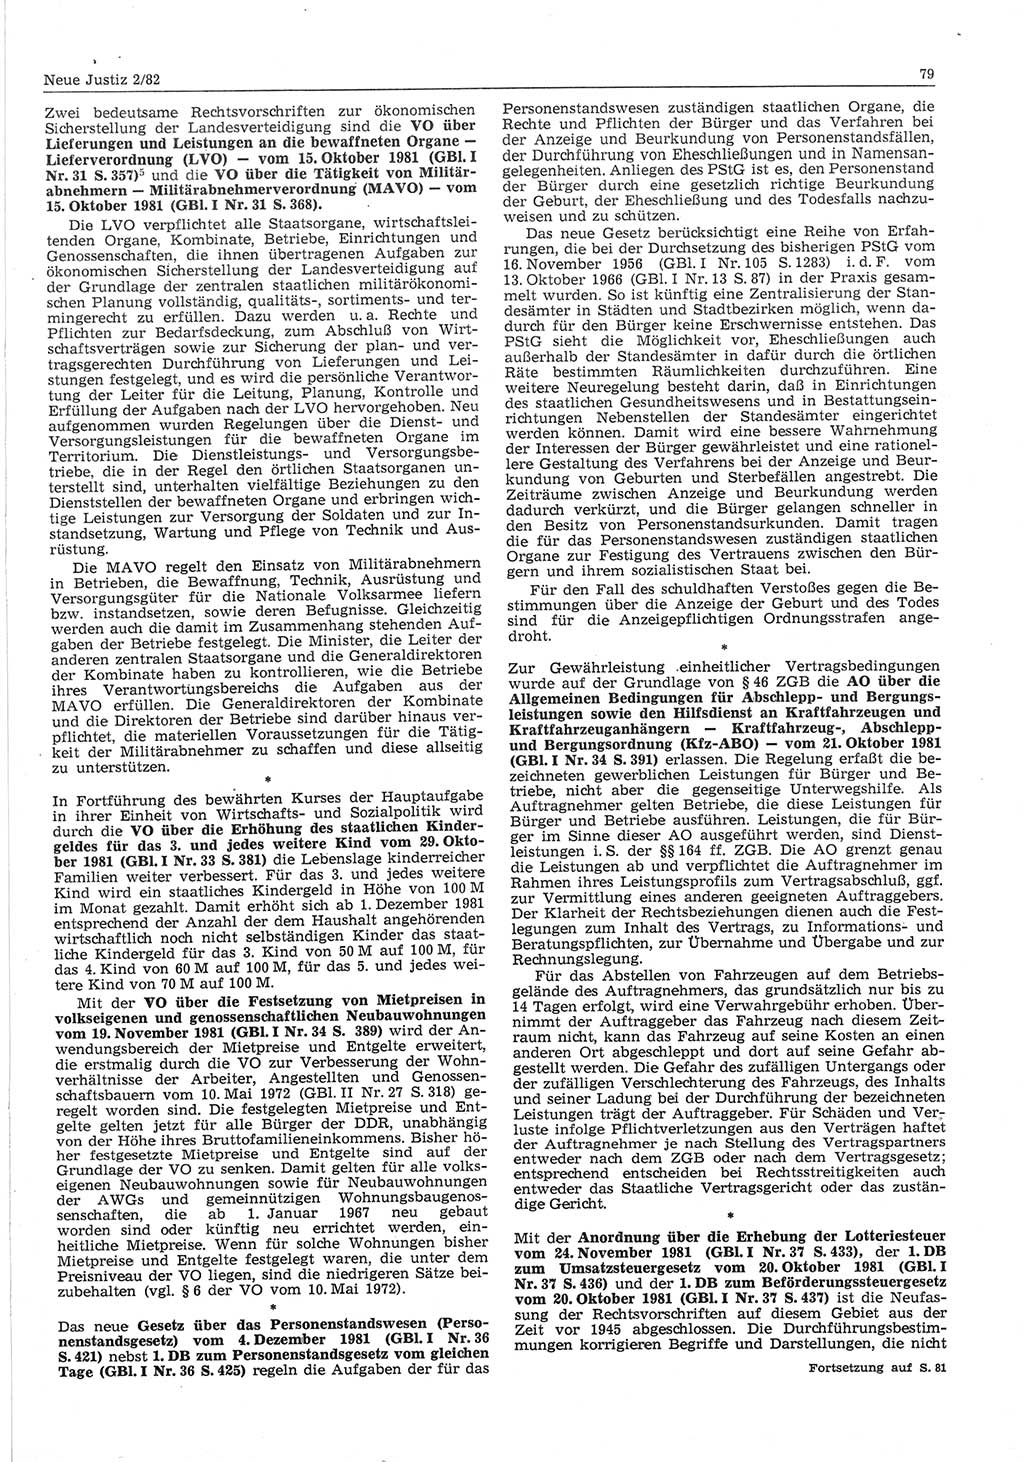 Neue Justiz (NJ), Zeitschrift für sozialistisches Recht und Gesetzlichkeit [Deutsche Demokratische Republik (DDR)], 36. Jahrgang 1982, Seite 79 (NJ DDR 1982, S. 79)